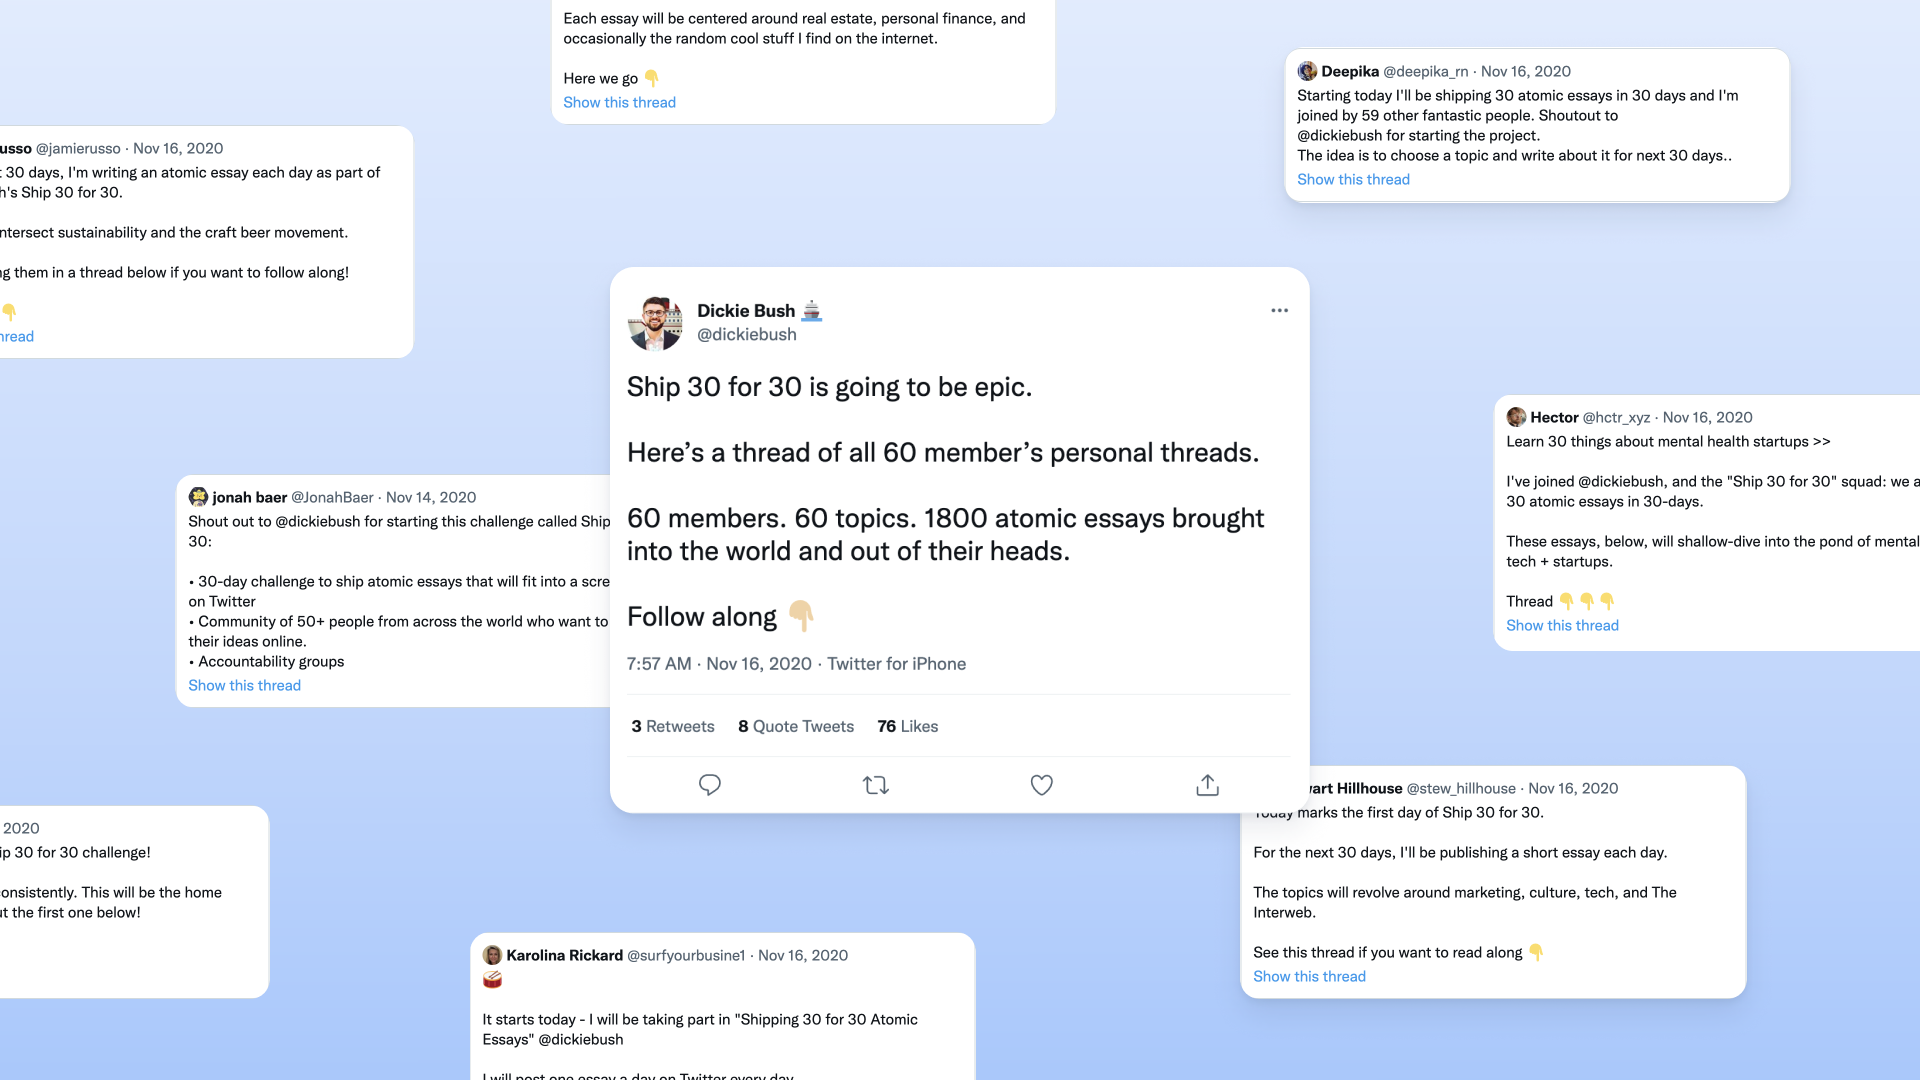 Ship 30 for 30를 시작하는 사람들은 트위터에 무조건 ‘글쓰기 시작 공표’를 해야 한다.